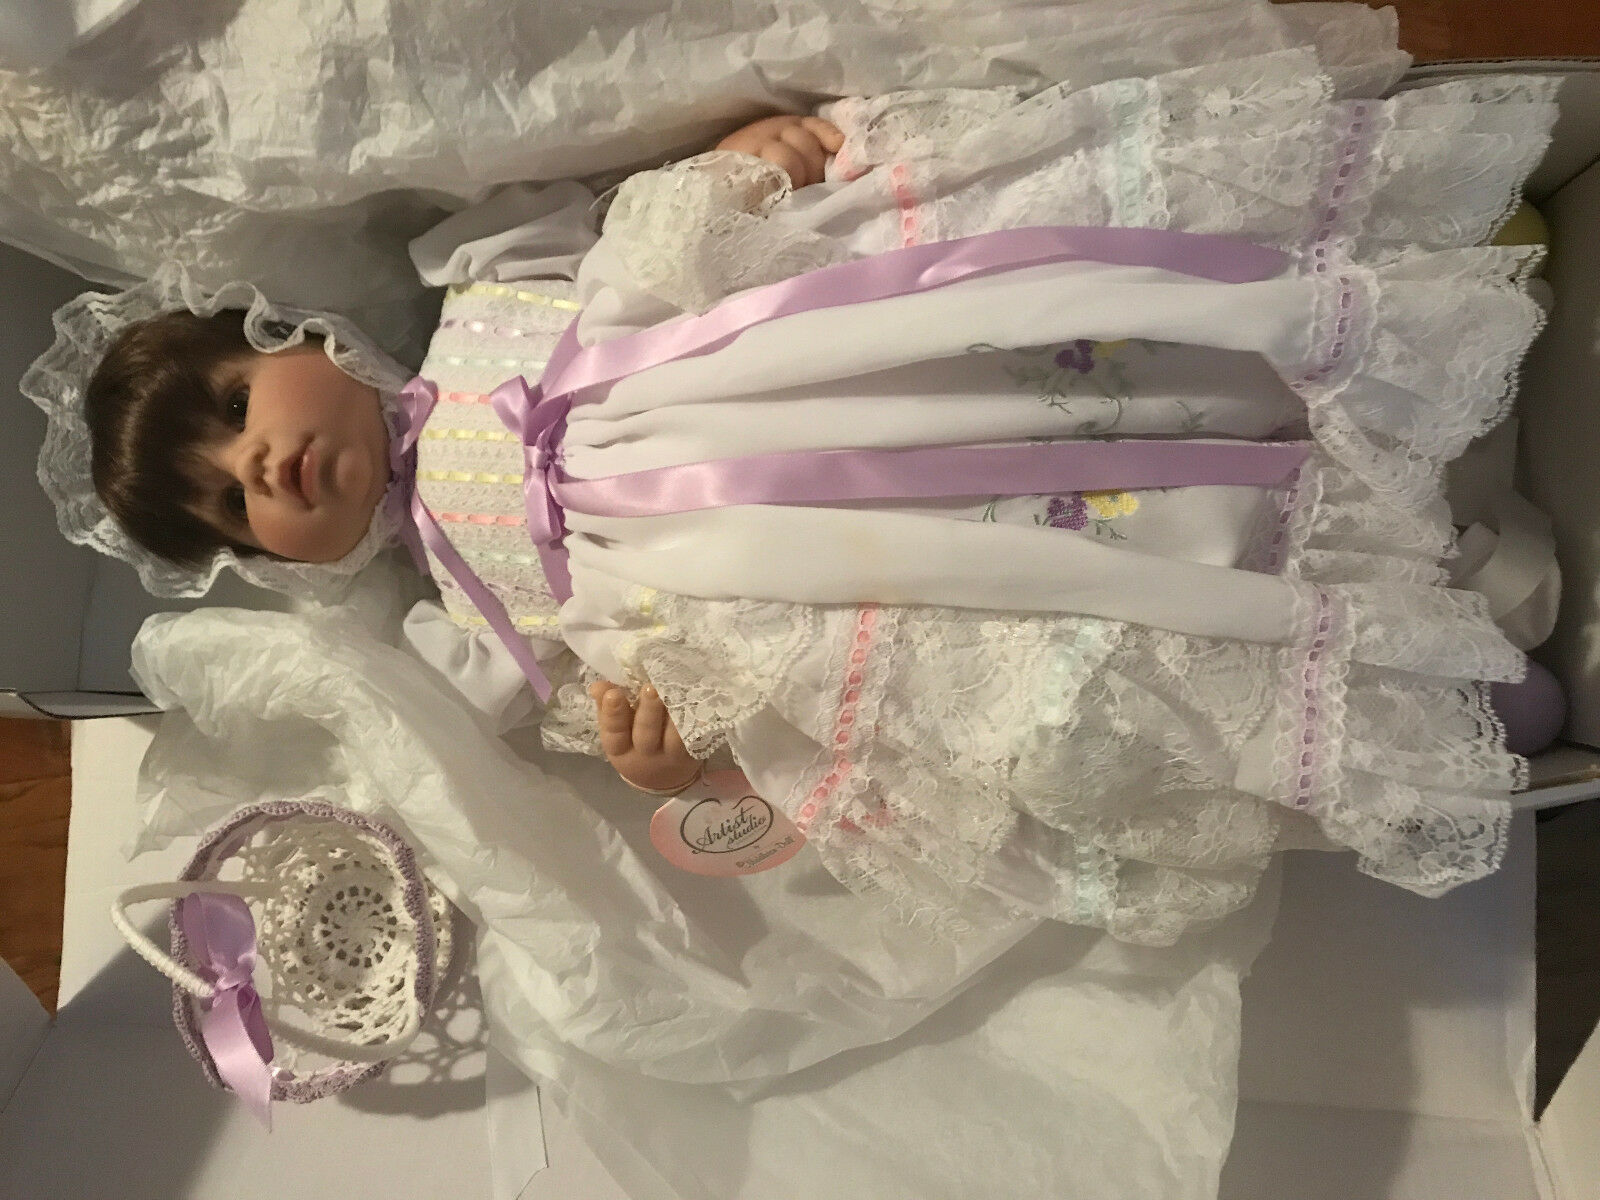 Rare Lee Middleton Doll Easter Blessing 01920